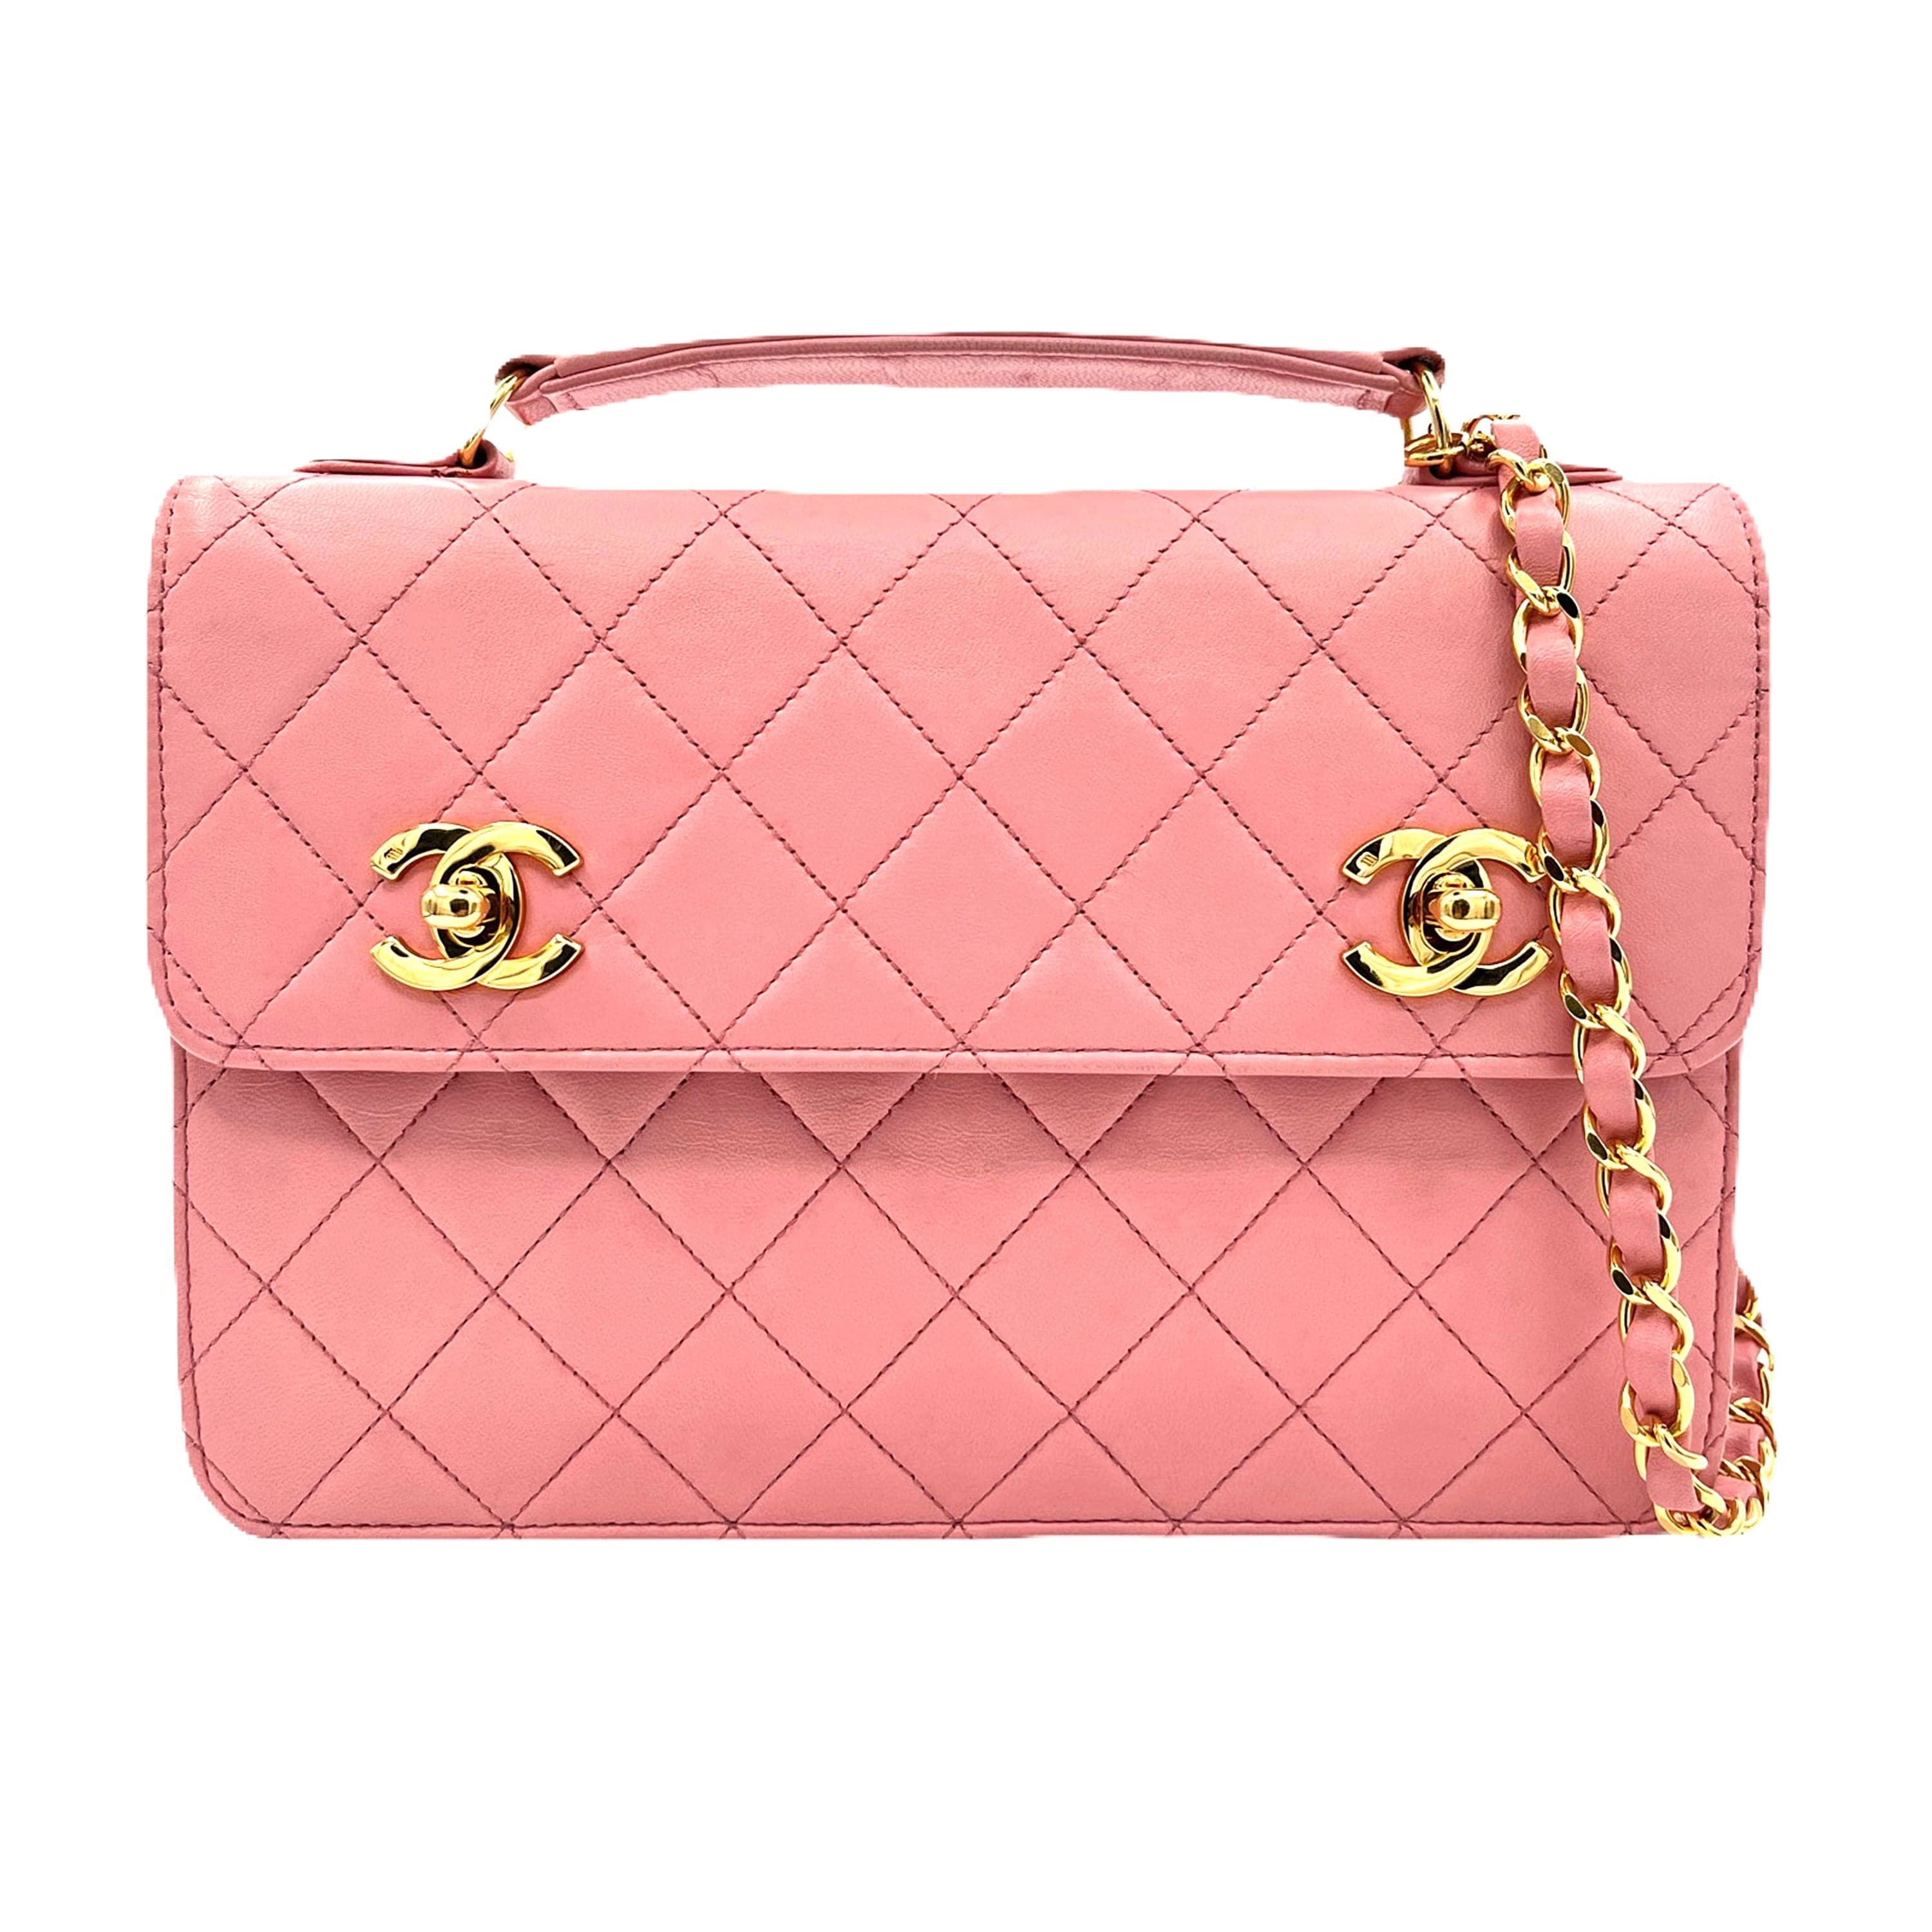 Chanel Chanel Vintage Double Turnlock Satchel Pink Lambskin GHW #1 90218037